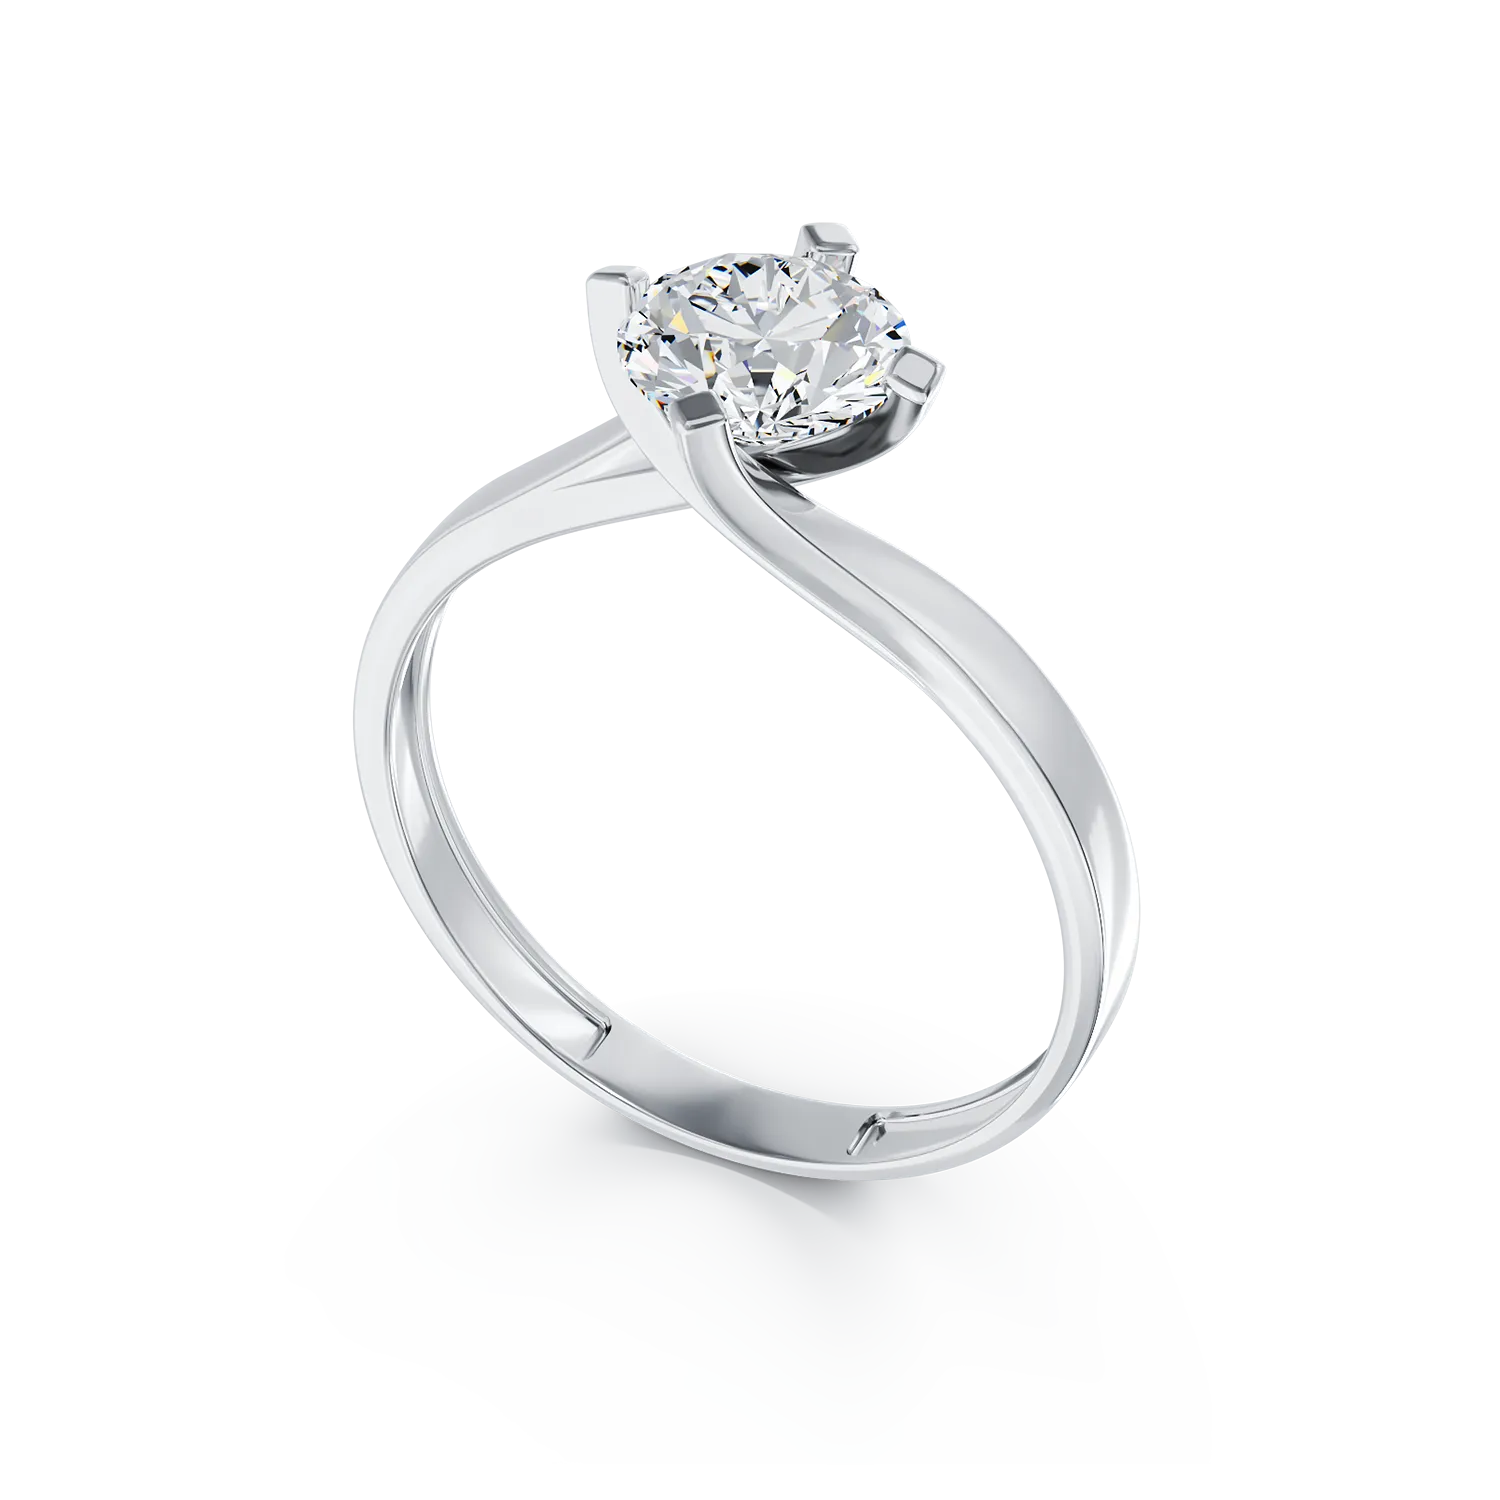 18k white gold engagement ring